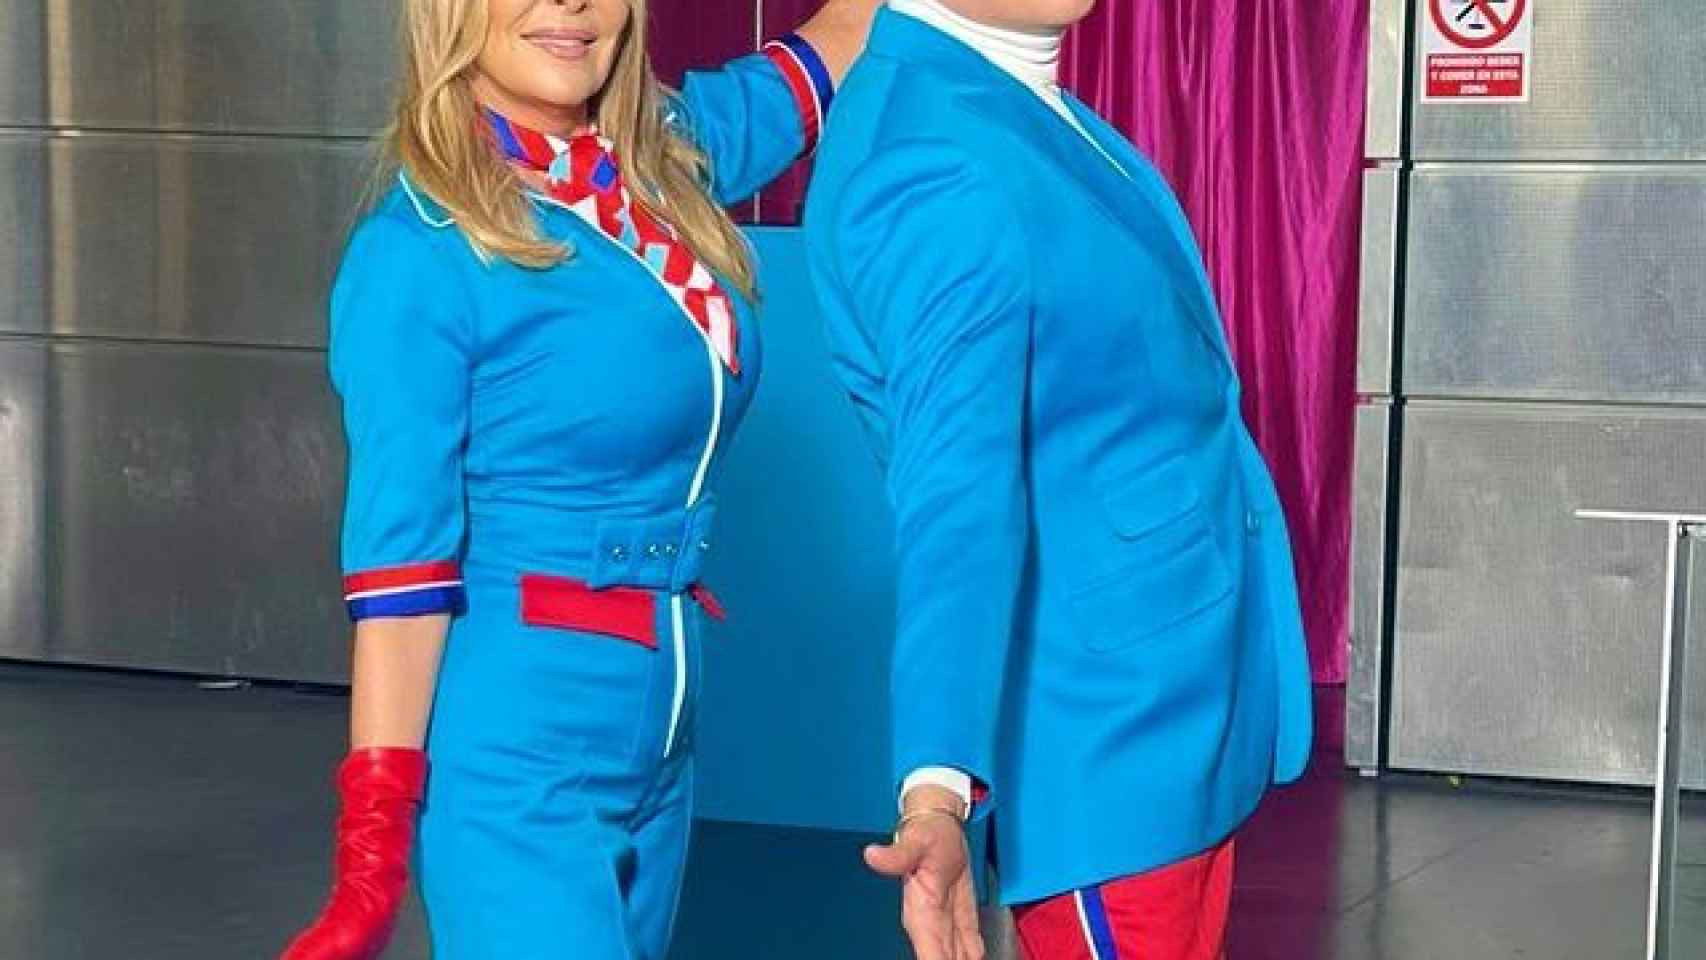 Ana Obregón y Boris Izaguirre se pusieron en la piel de unos glamourosos azafatos de vuelo.